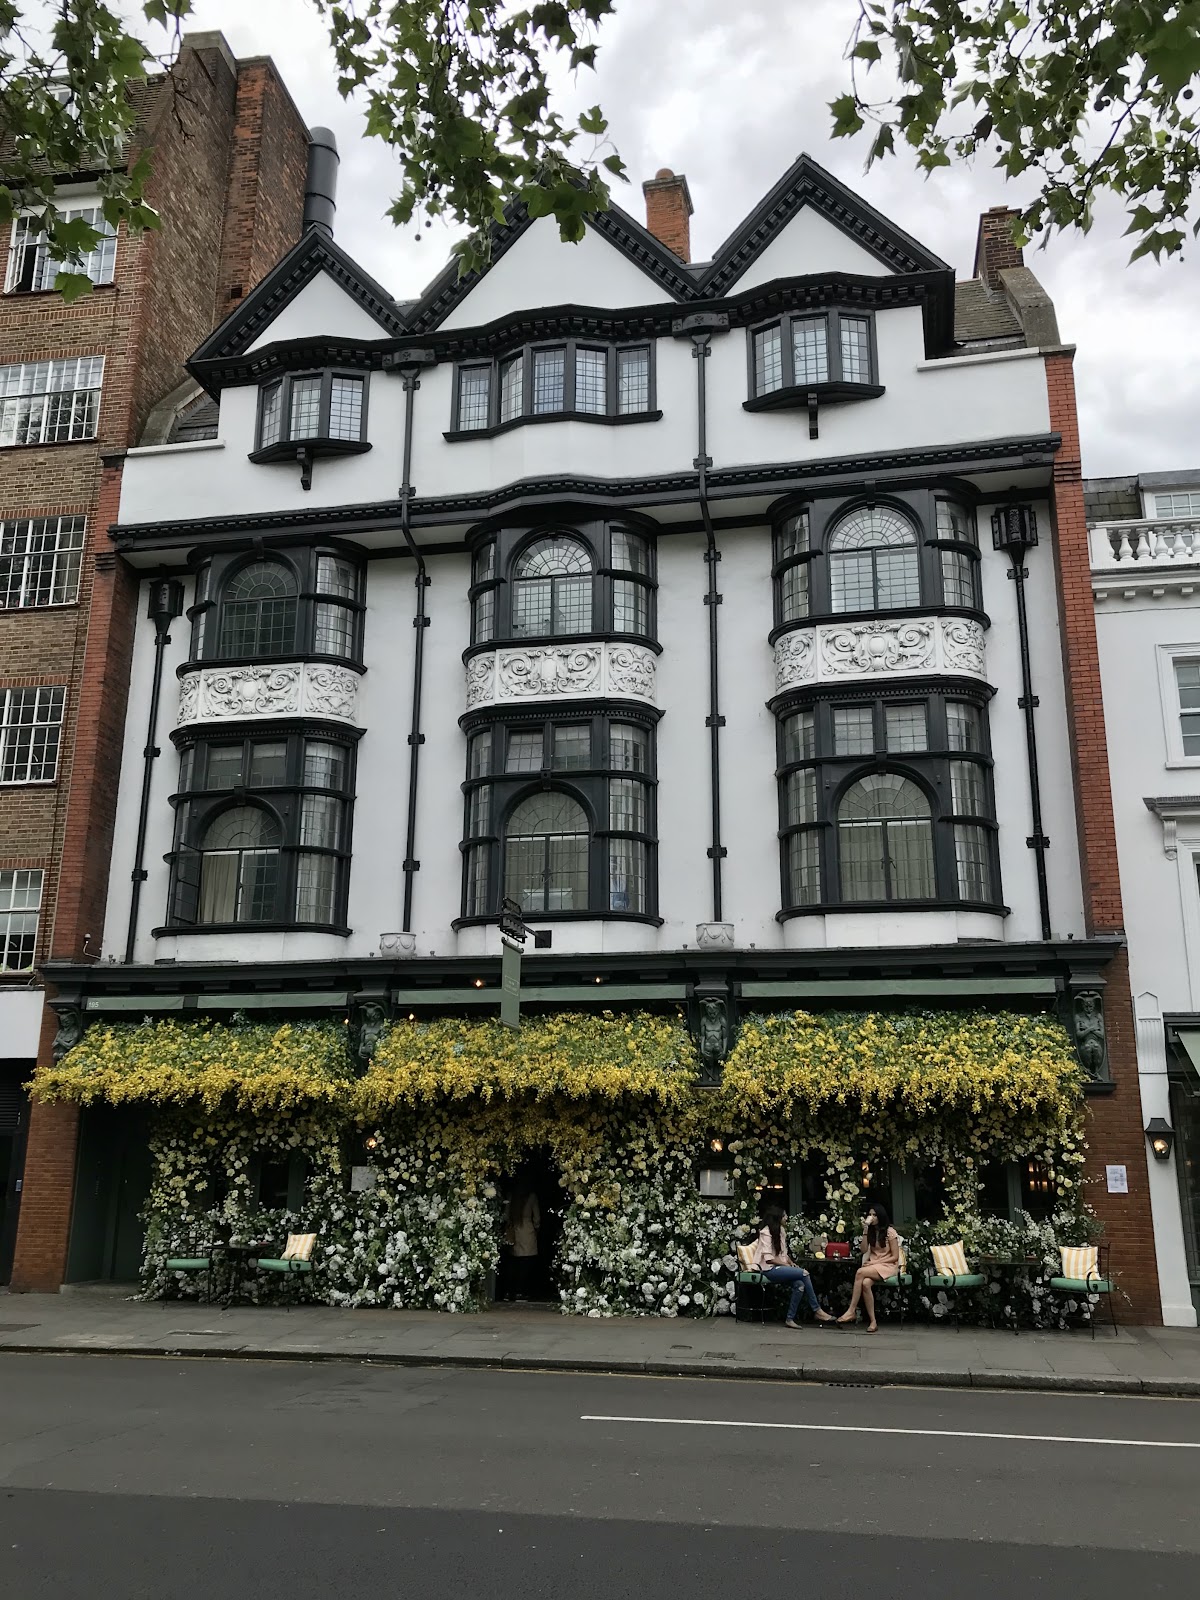 unique spots in london